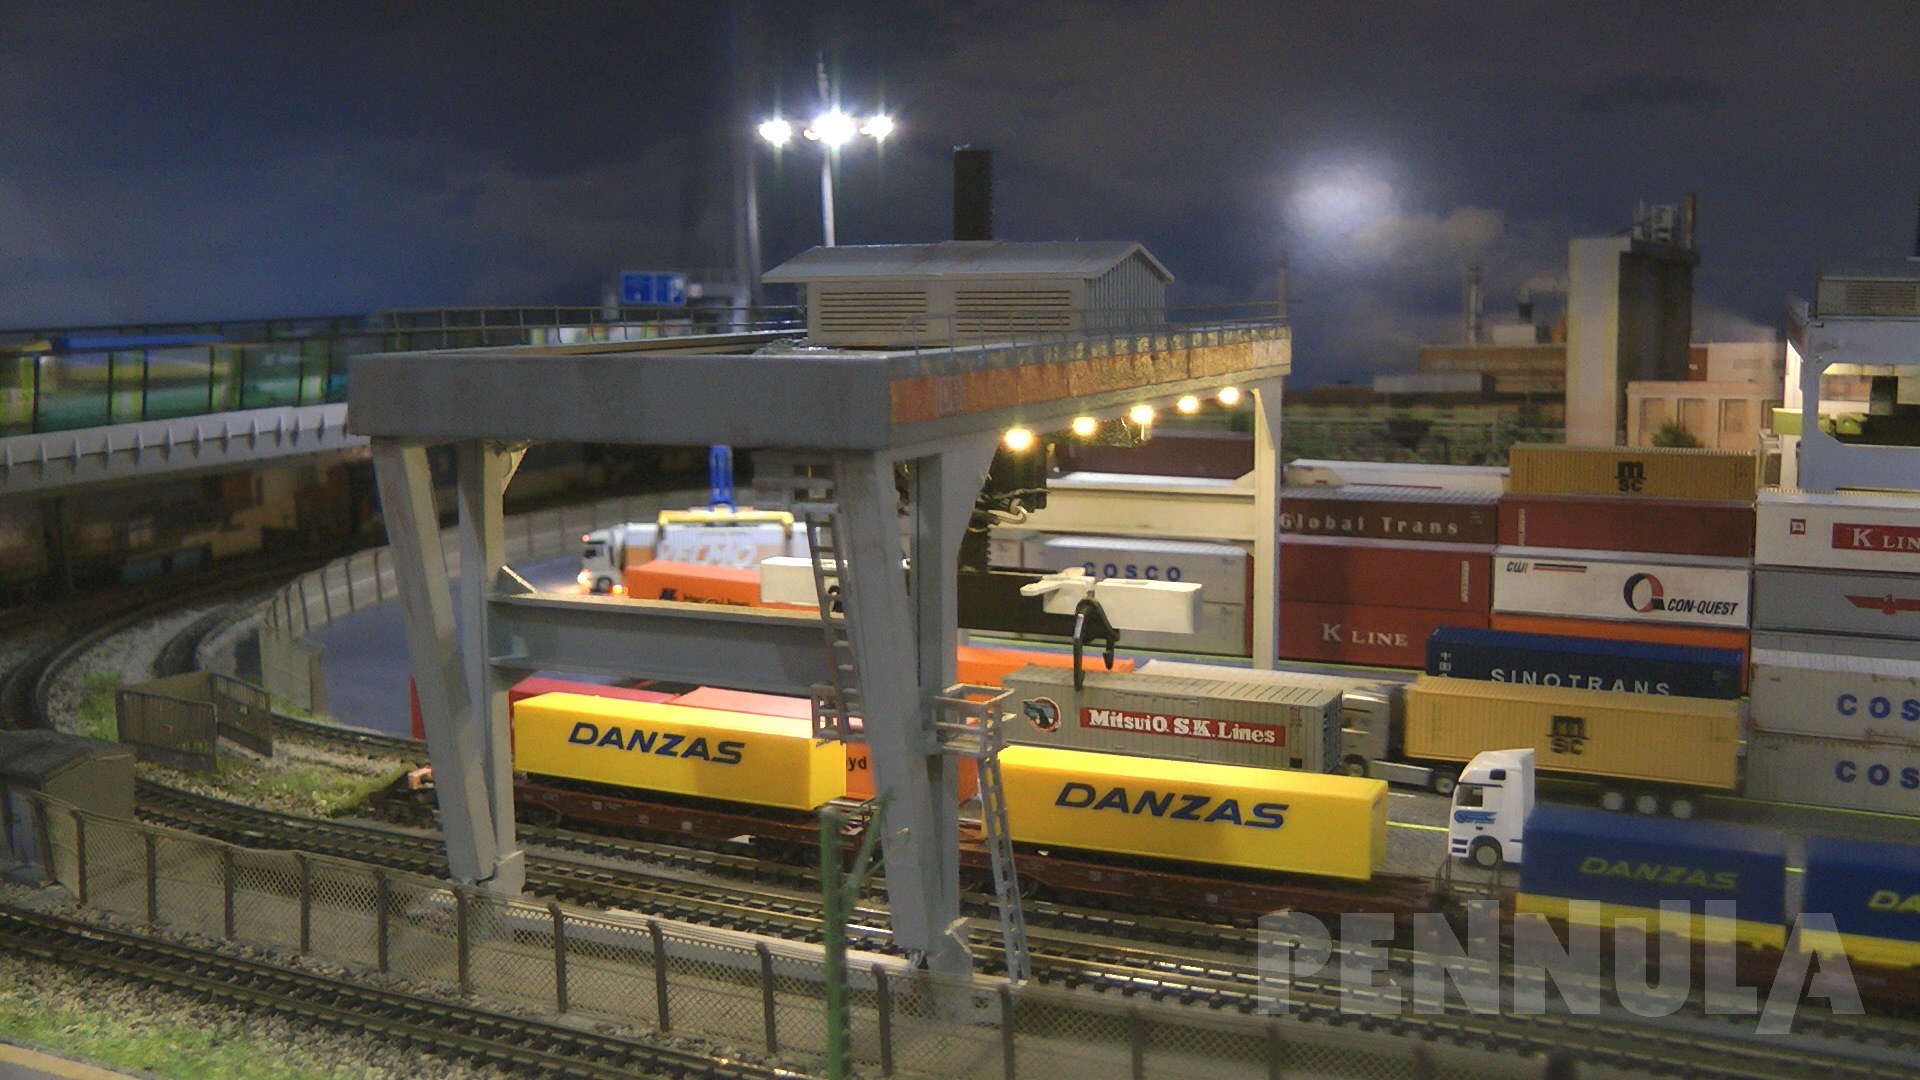 Faszination Modellbahn Mannheim 2019 - Spur Z Containerterminal von Claudius Veit (VELMO)